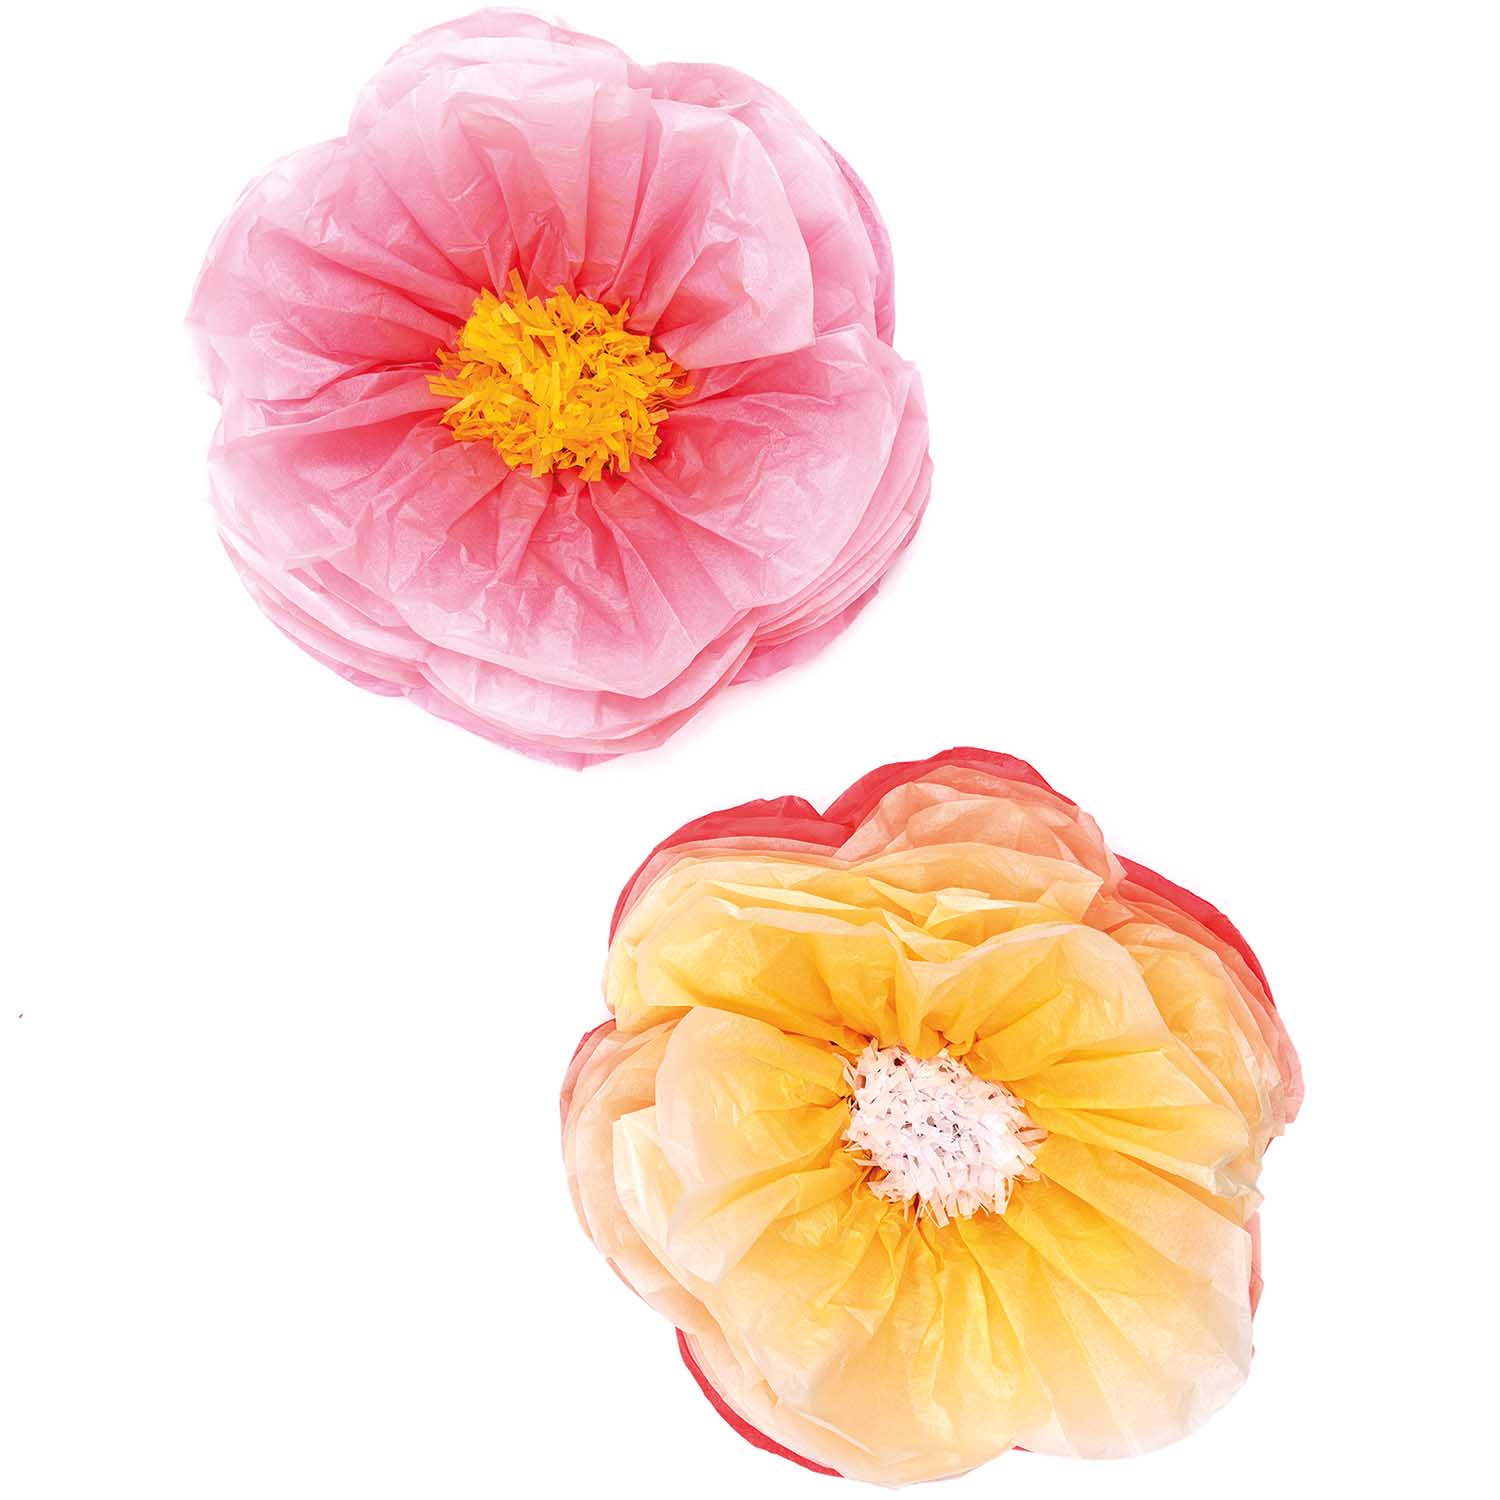 Tissue papier bloemen roze en geel (Ø 40cm)